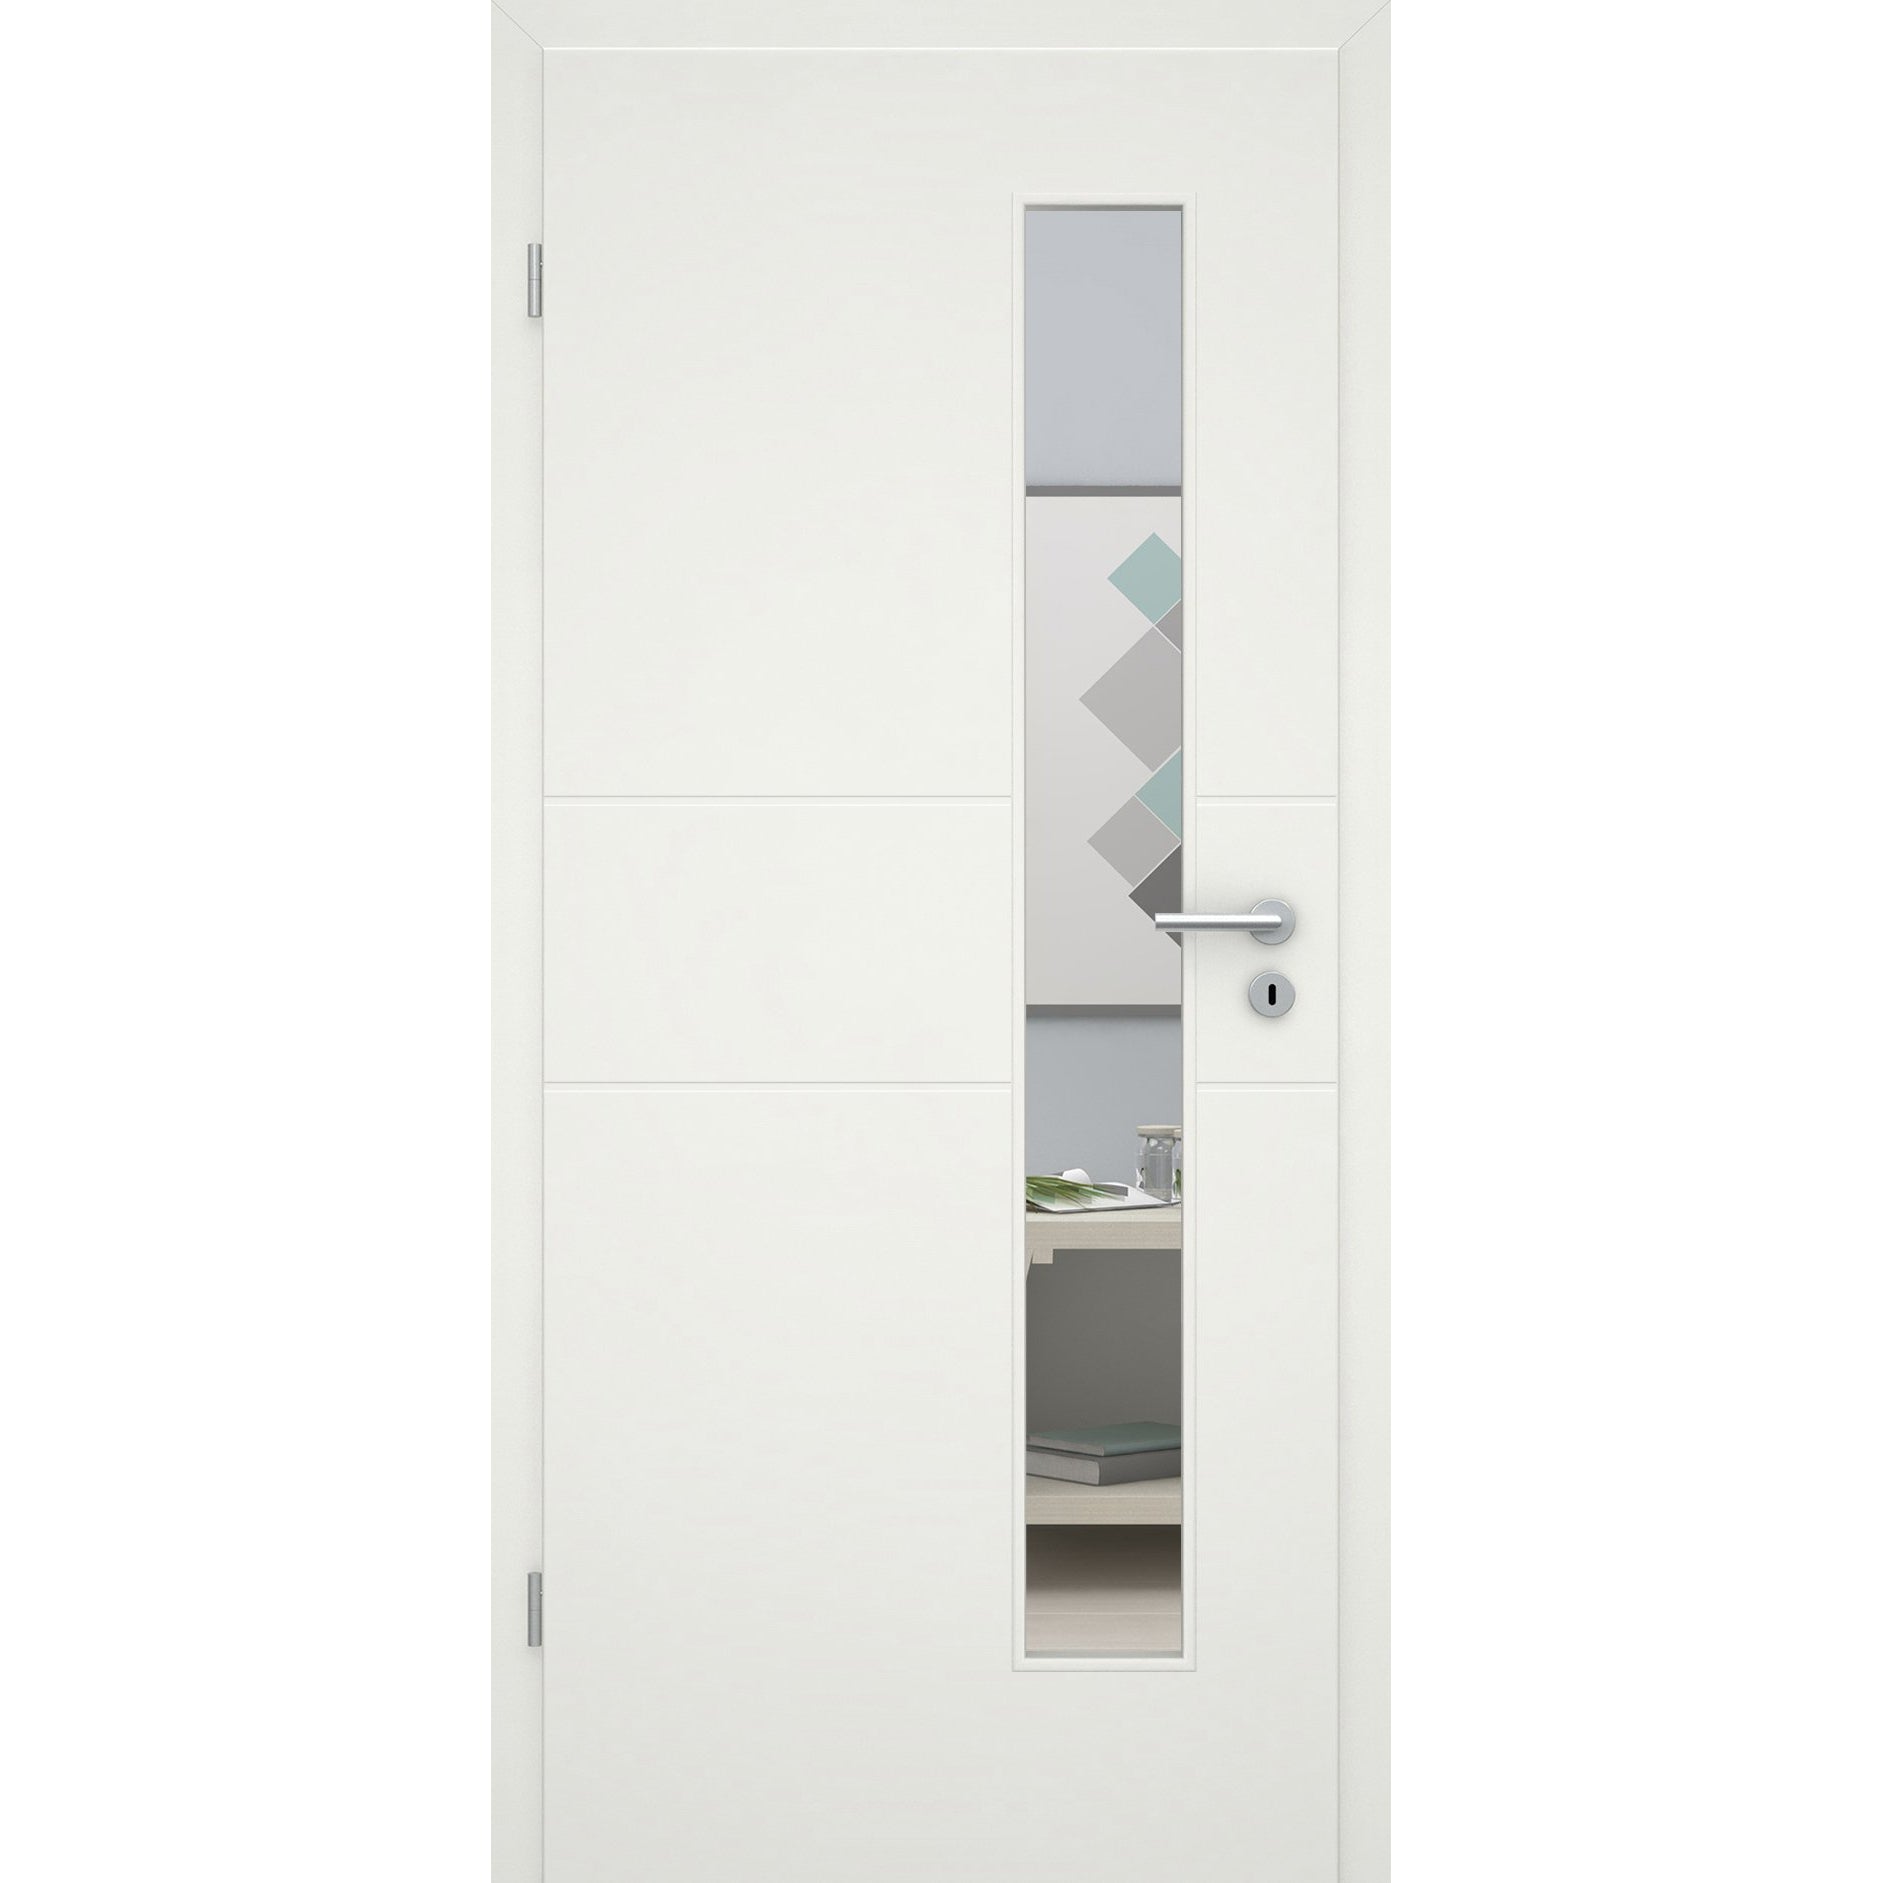 Zimmertür mit Lichtausschnittsoft-weiß 2 Rillen Eckkante - Modell Designtür Q21LAS